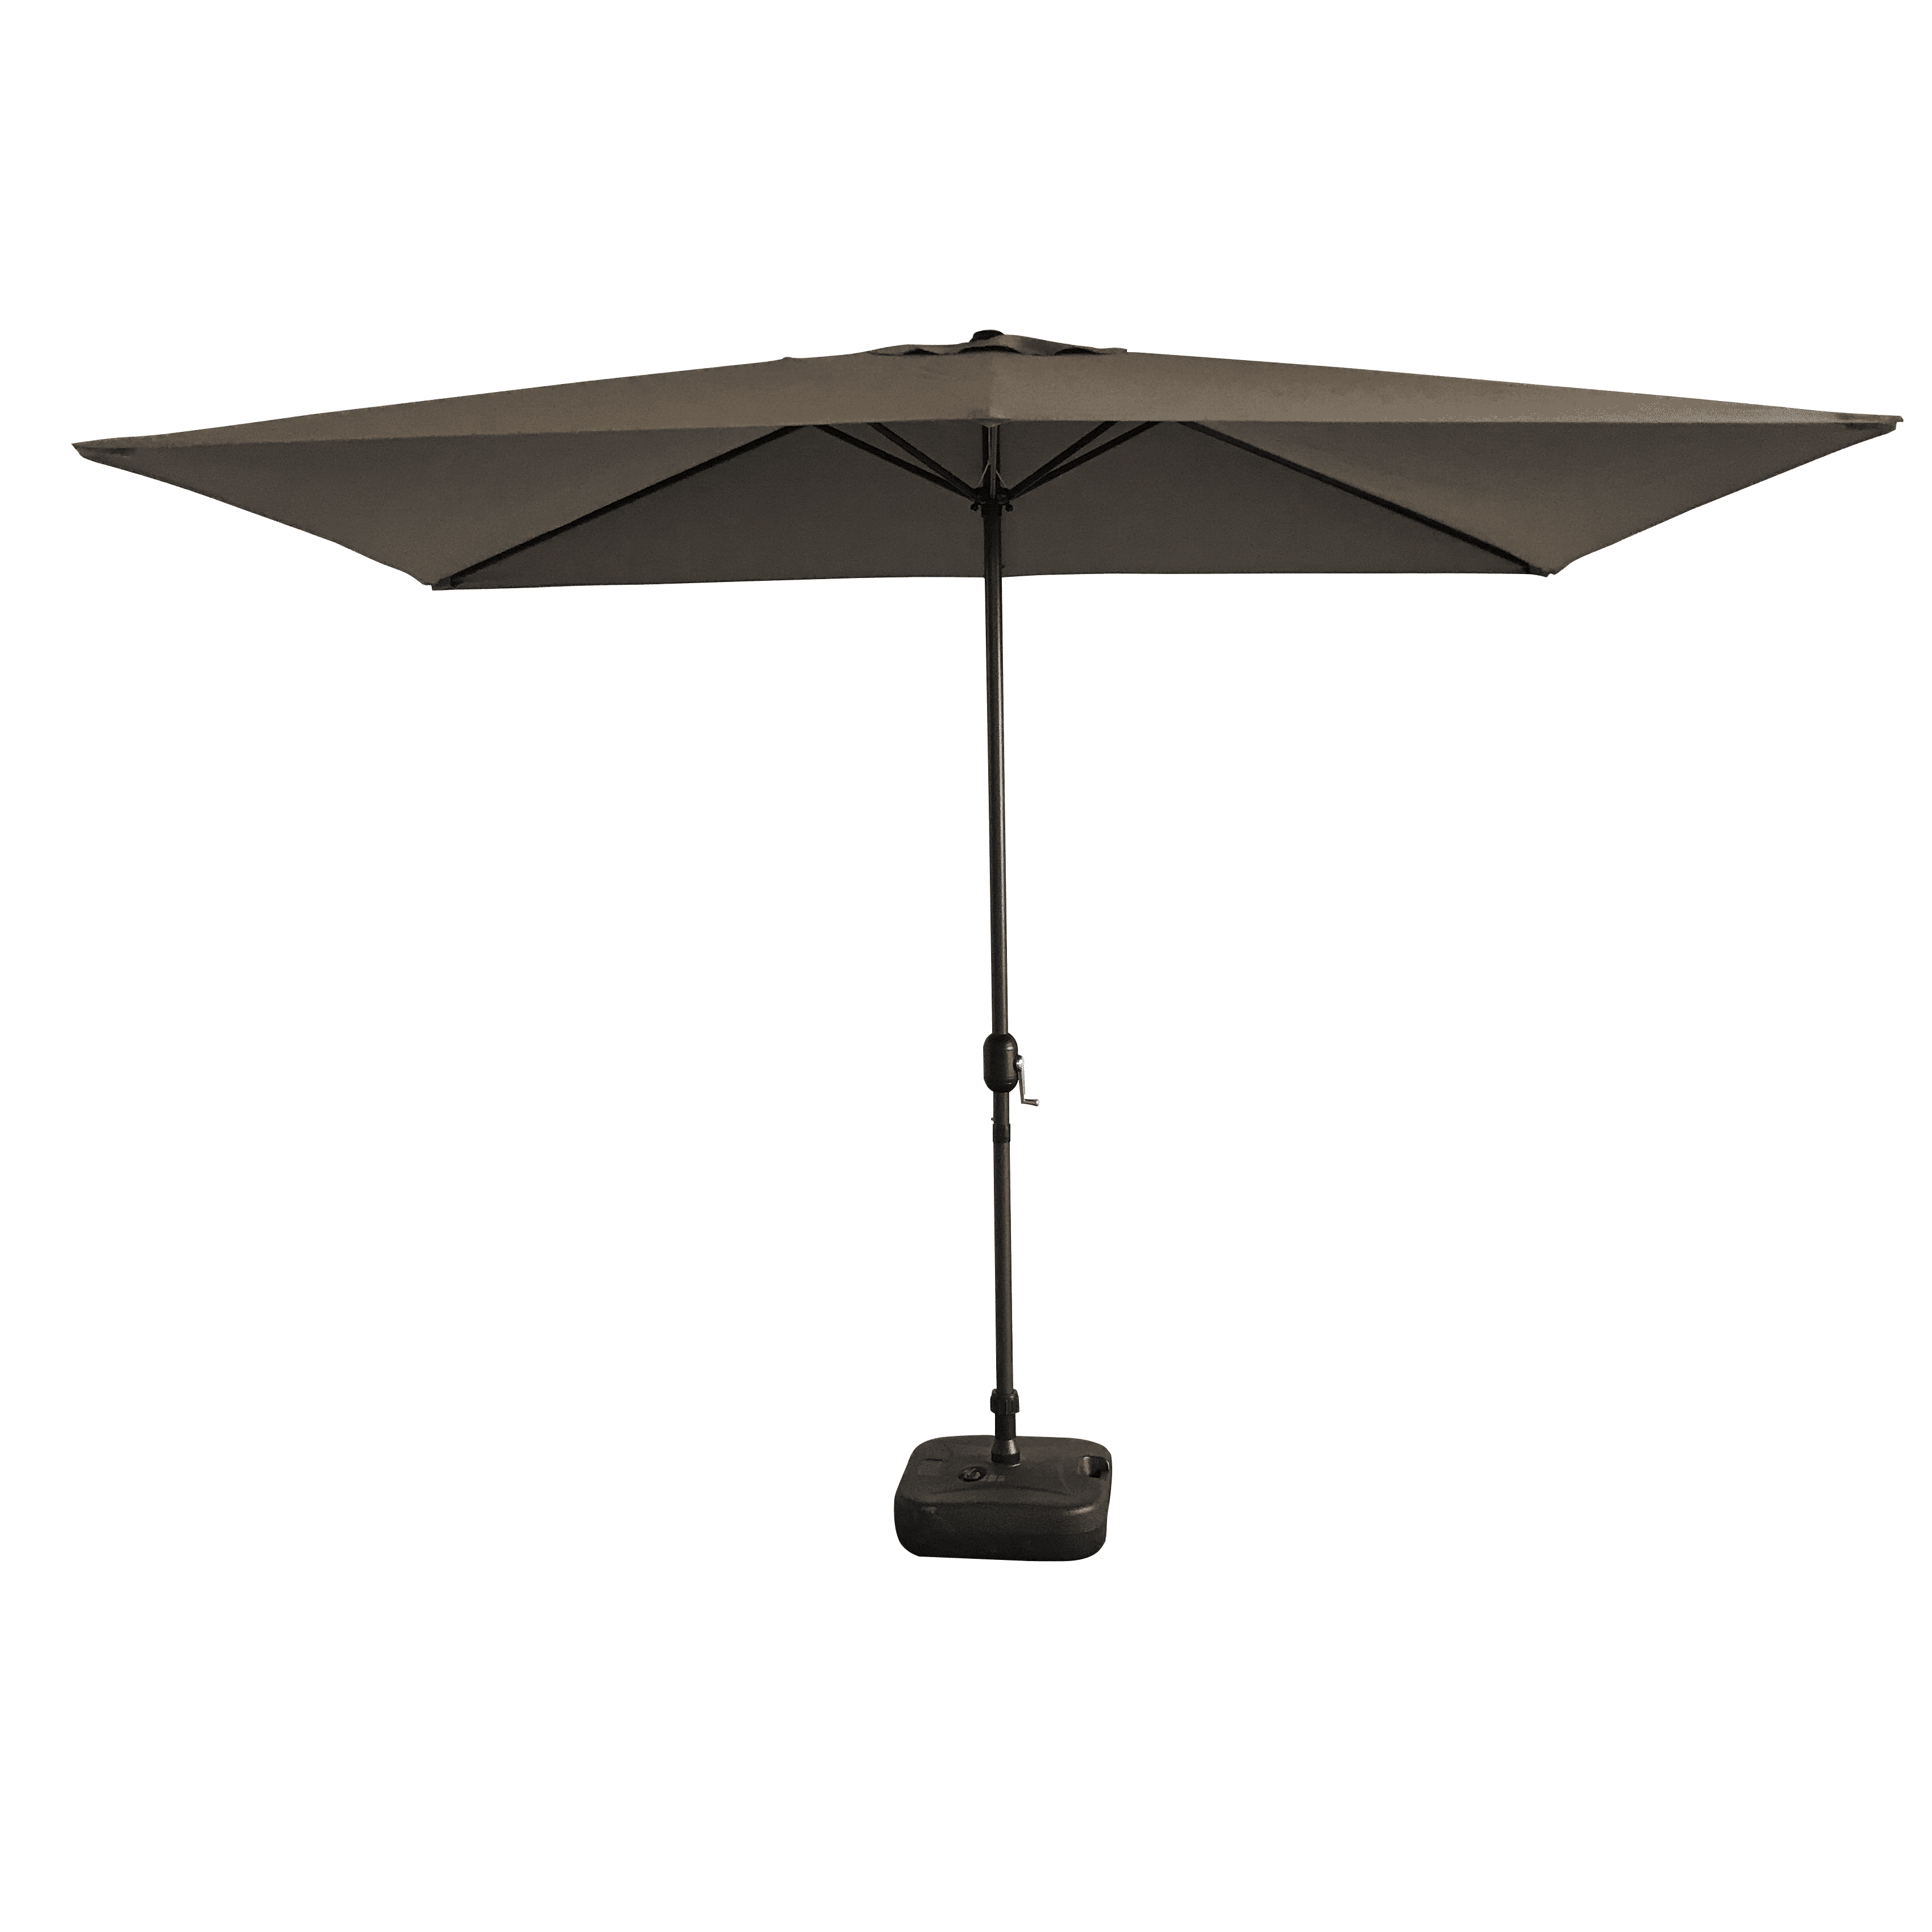 Reic teth a-muigh Patio Umbrella Parasols Garden Sun Umbrella